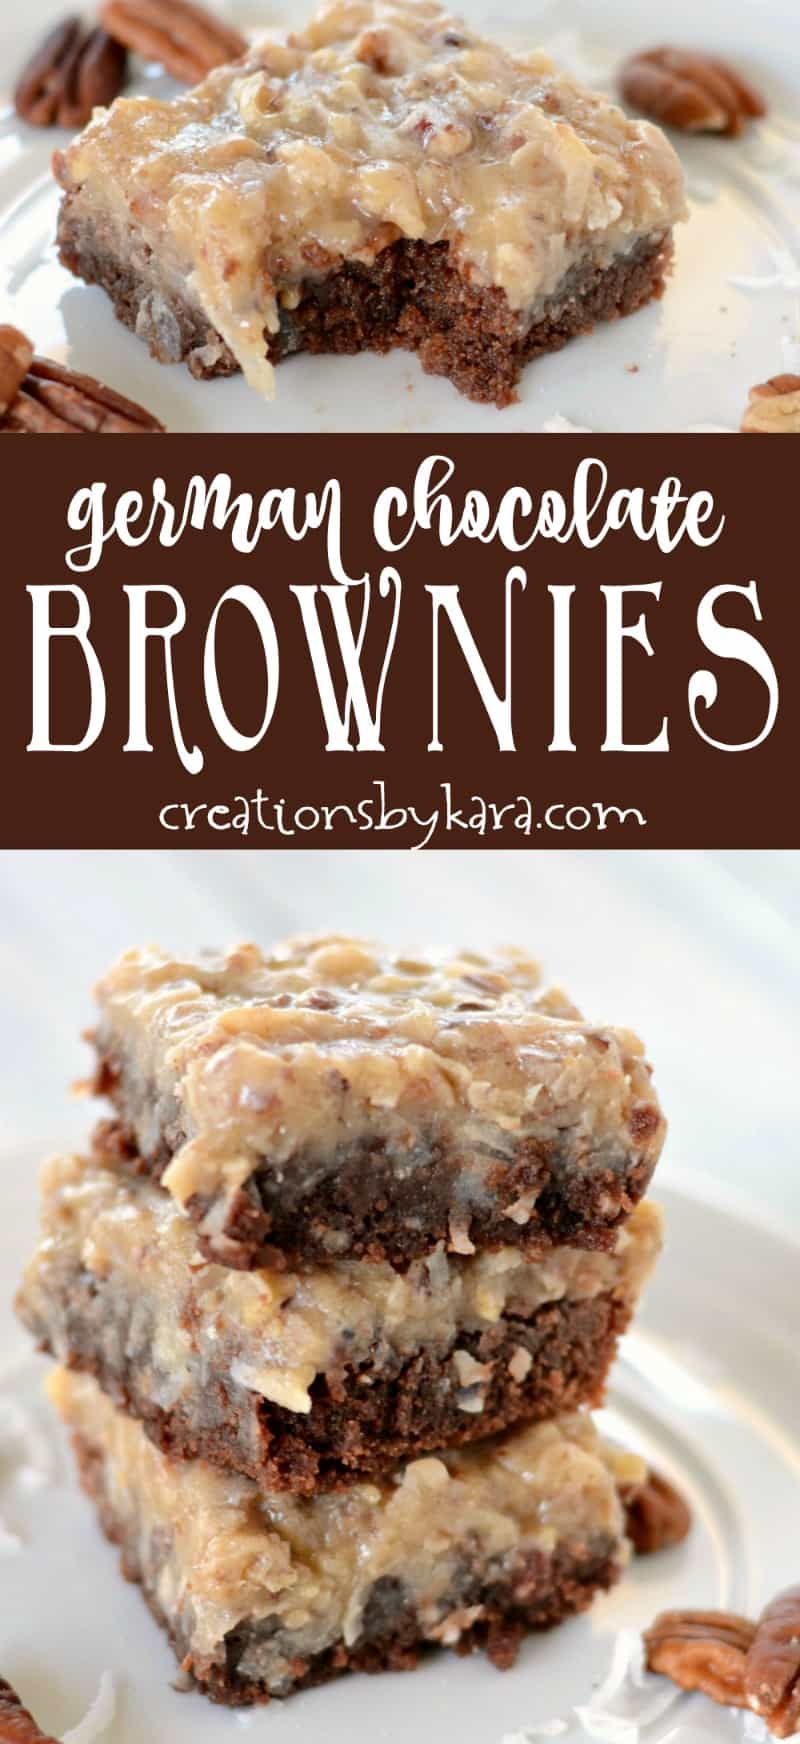 German Chocolate Brownies